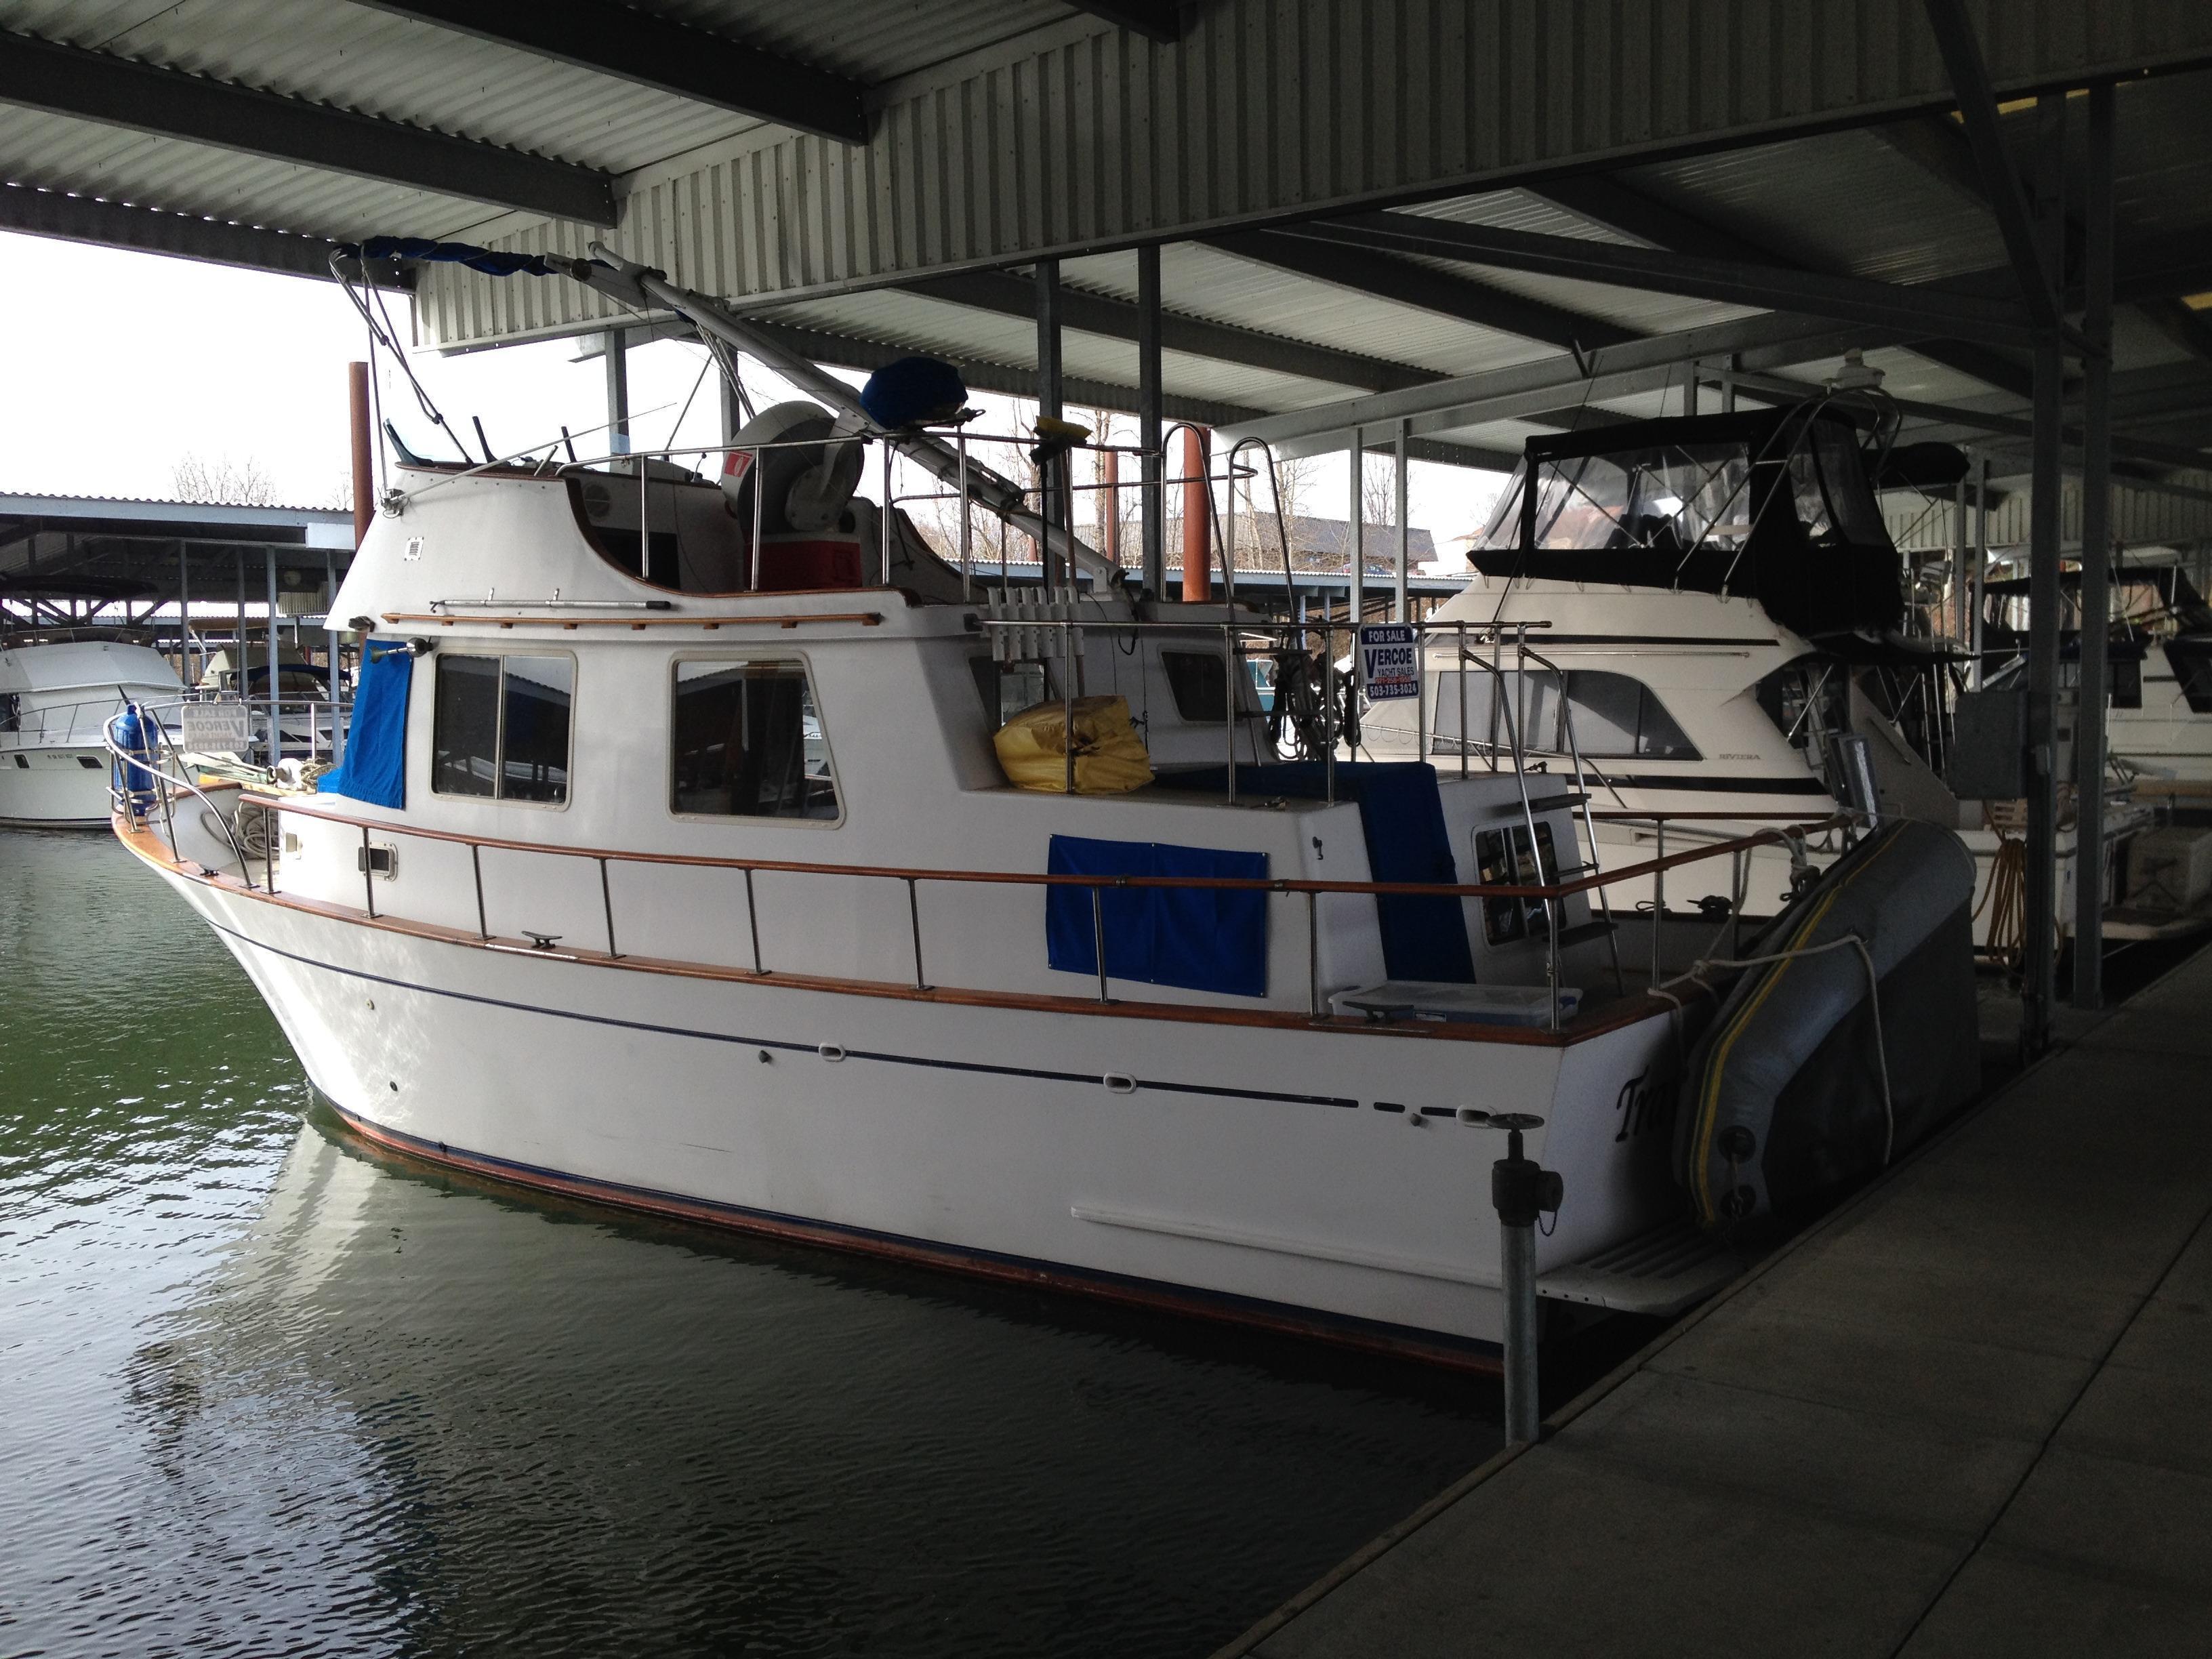 CHB Trawler, Portland -JB 332